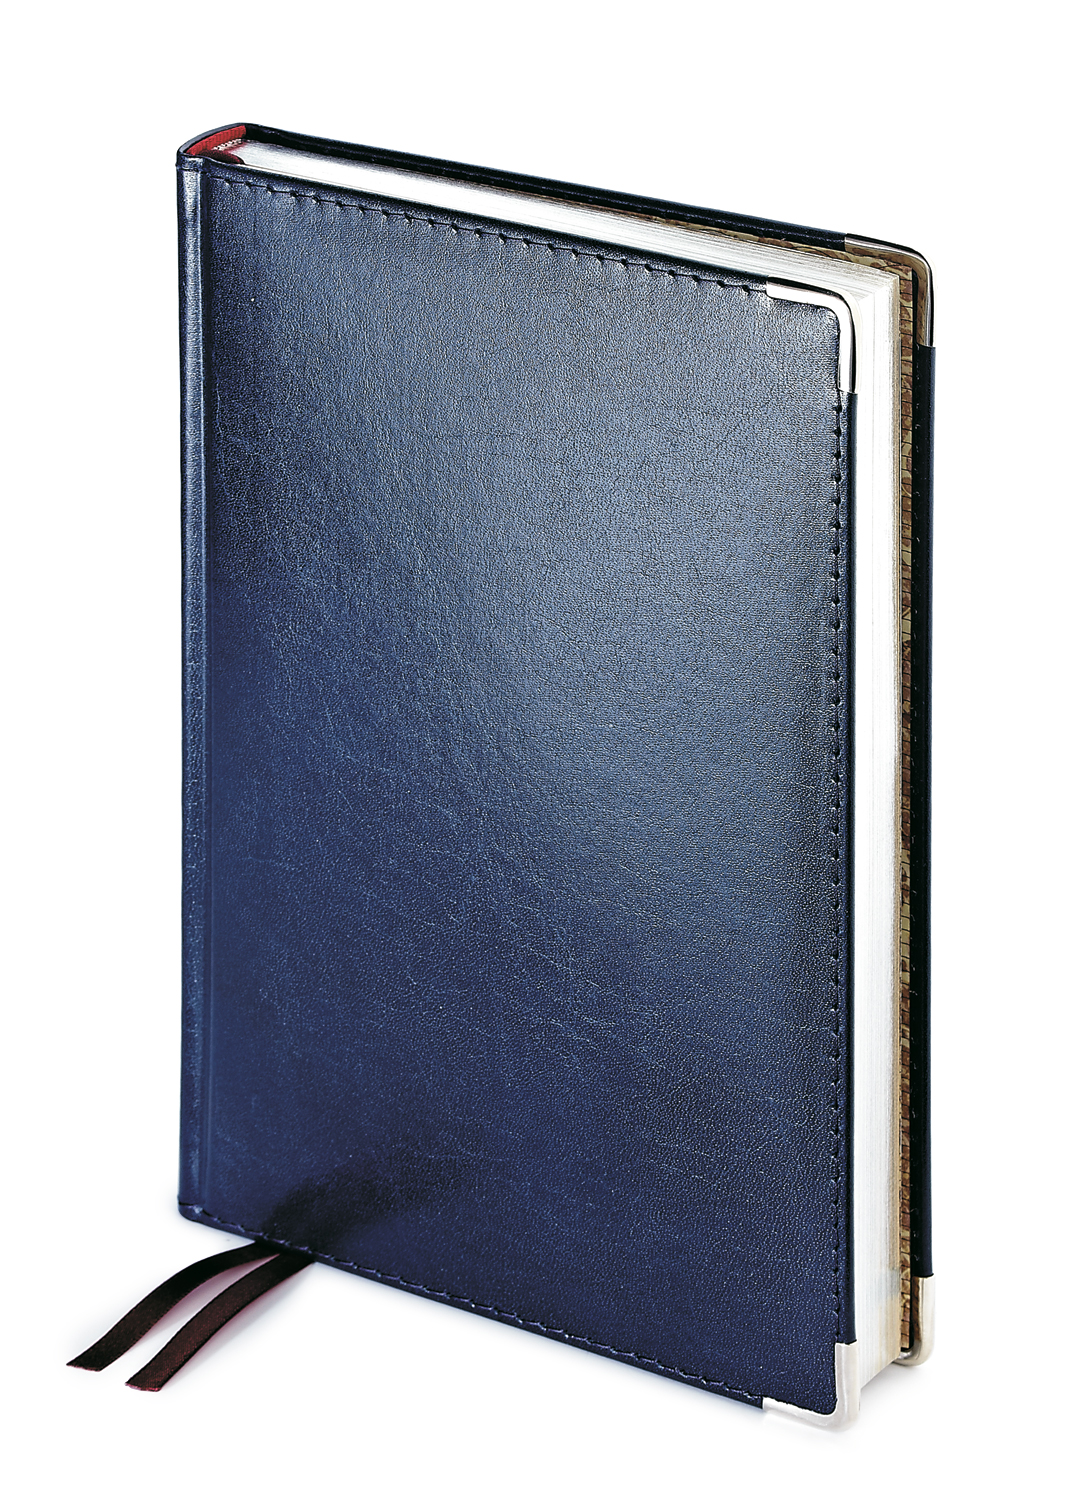 Ежедневник полудатированный Imperium, А5+, синий, бежевый блок, серебряный обрез, два ляссе, карта